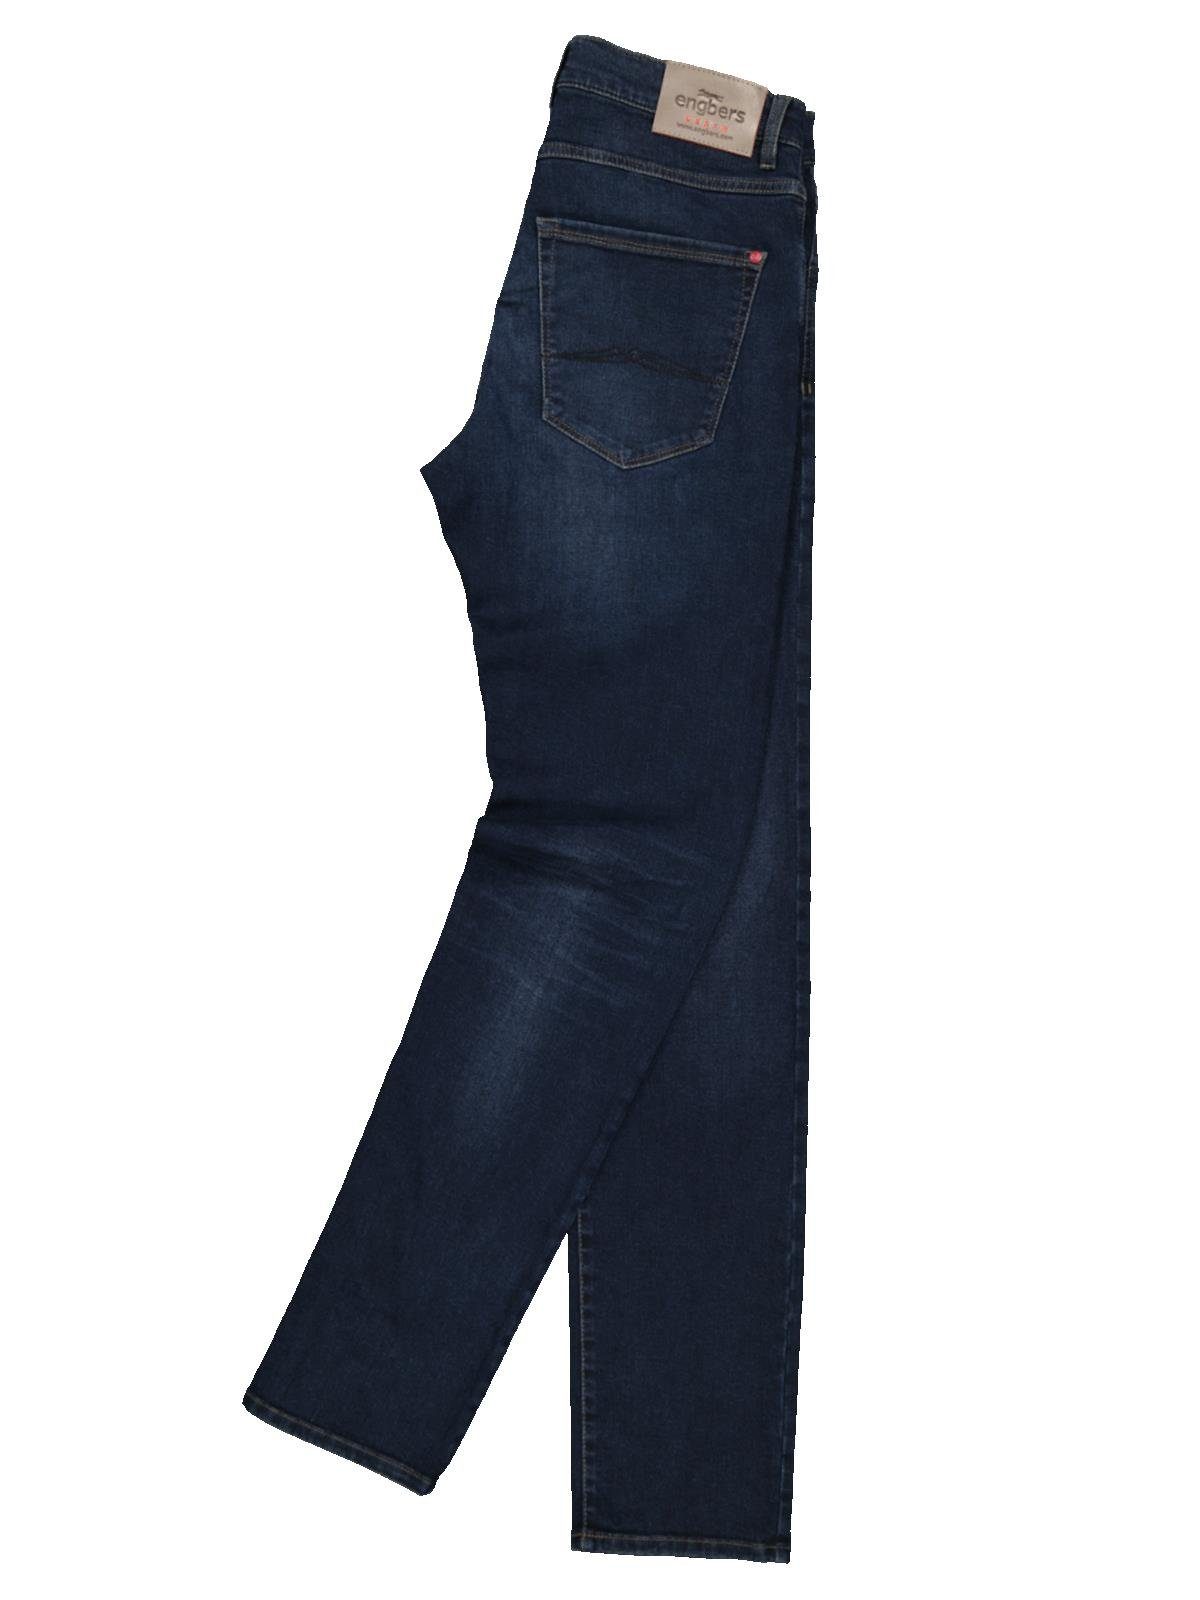 Engbers Stretch-Jeans fit Super-Stretch-Jeans slim